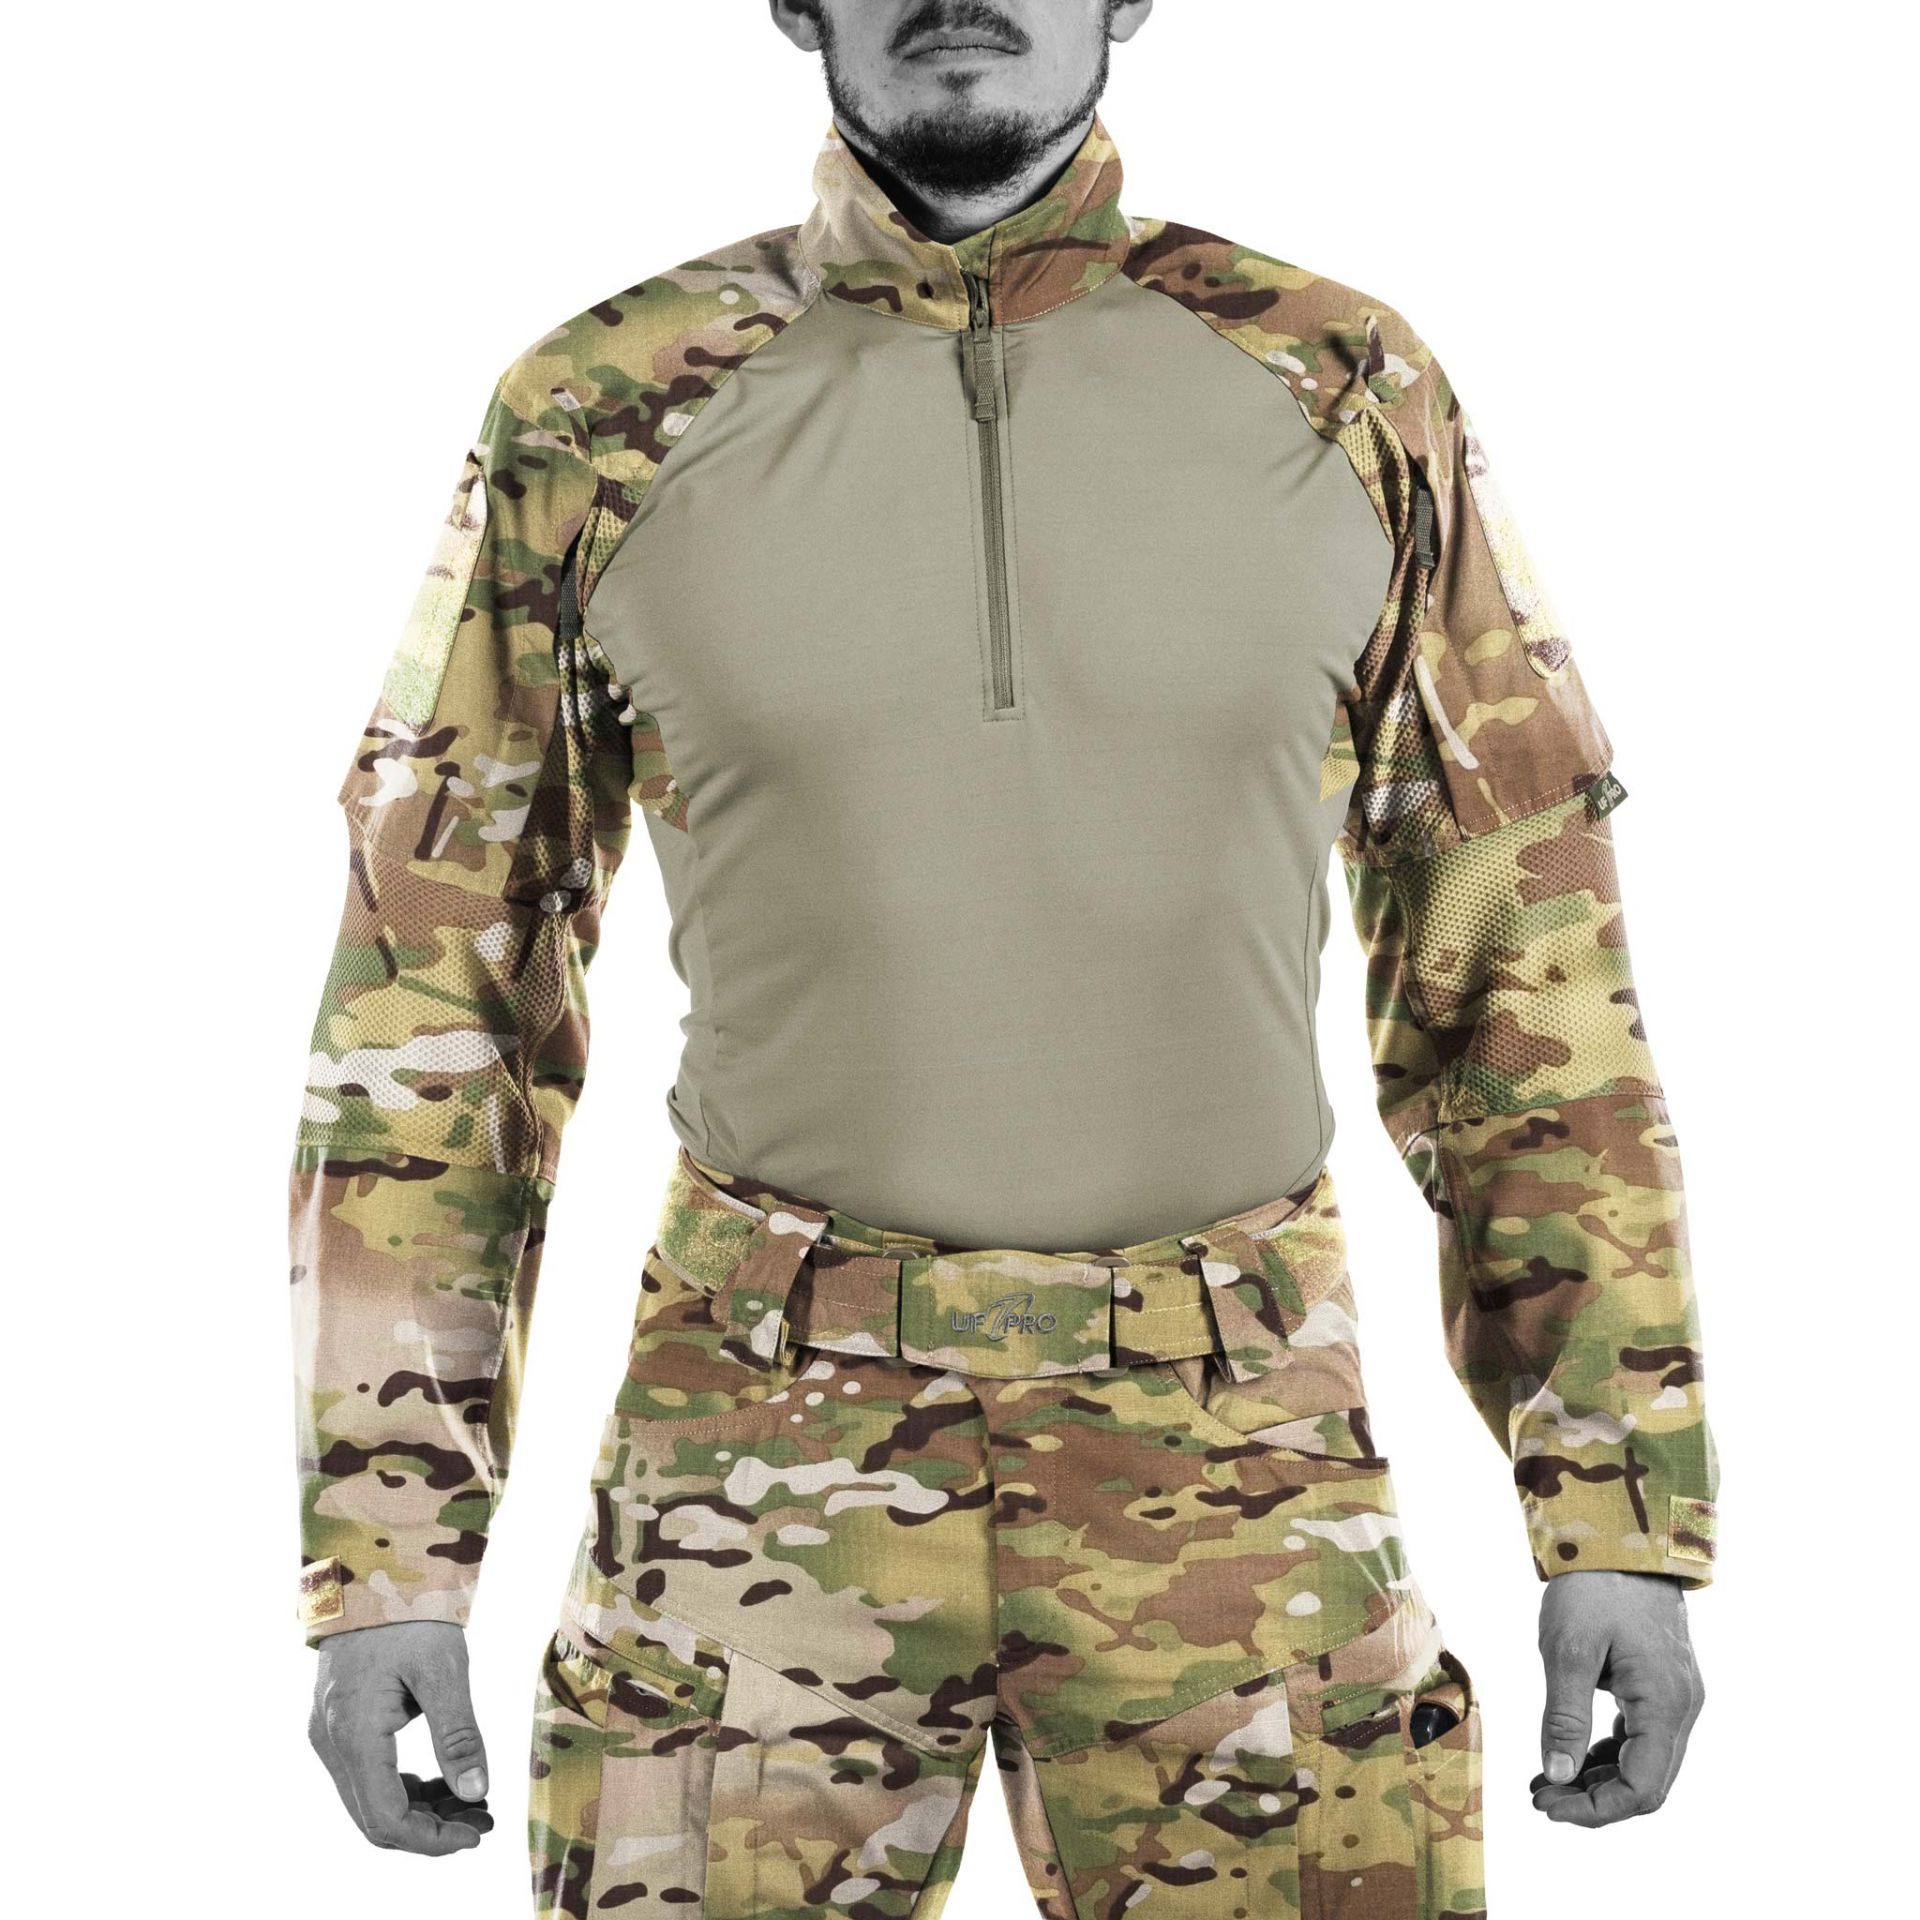 Striker XT gen3 combat shirt Multicam - BFG Outdoor